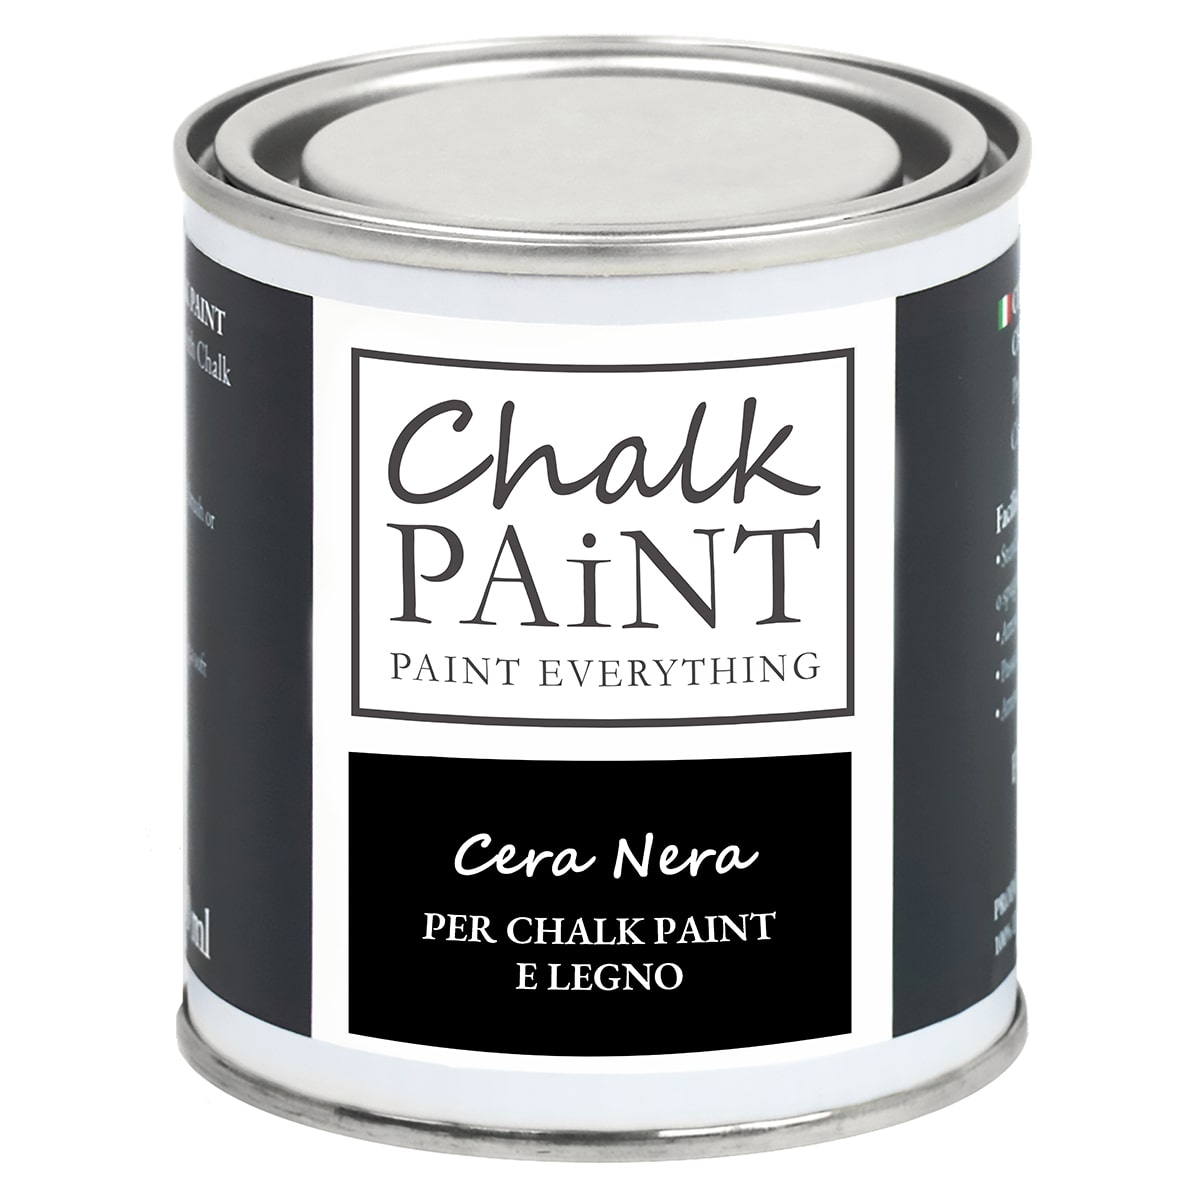 Cera Nera per chalk paint e legno